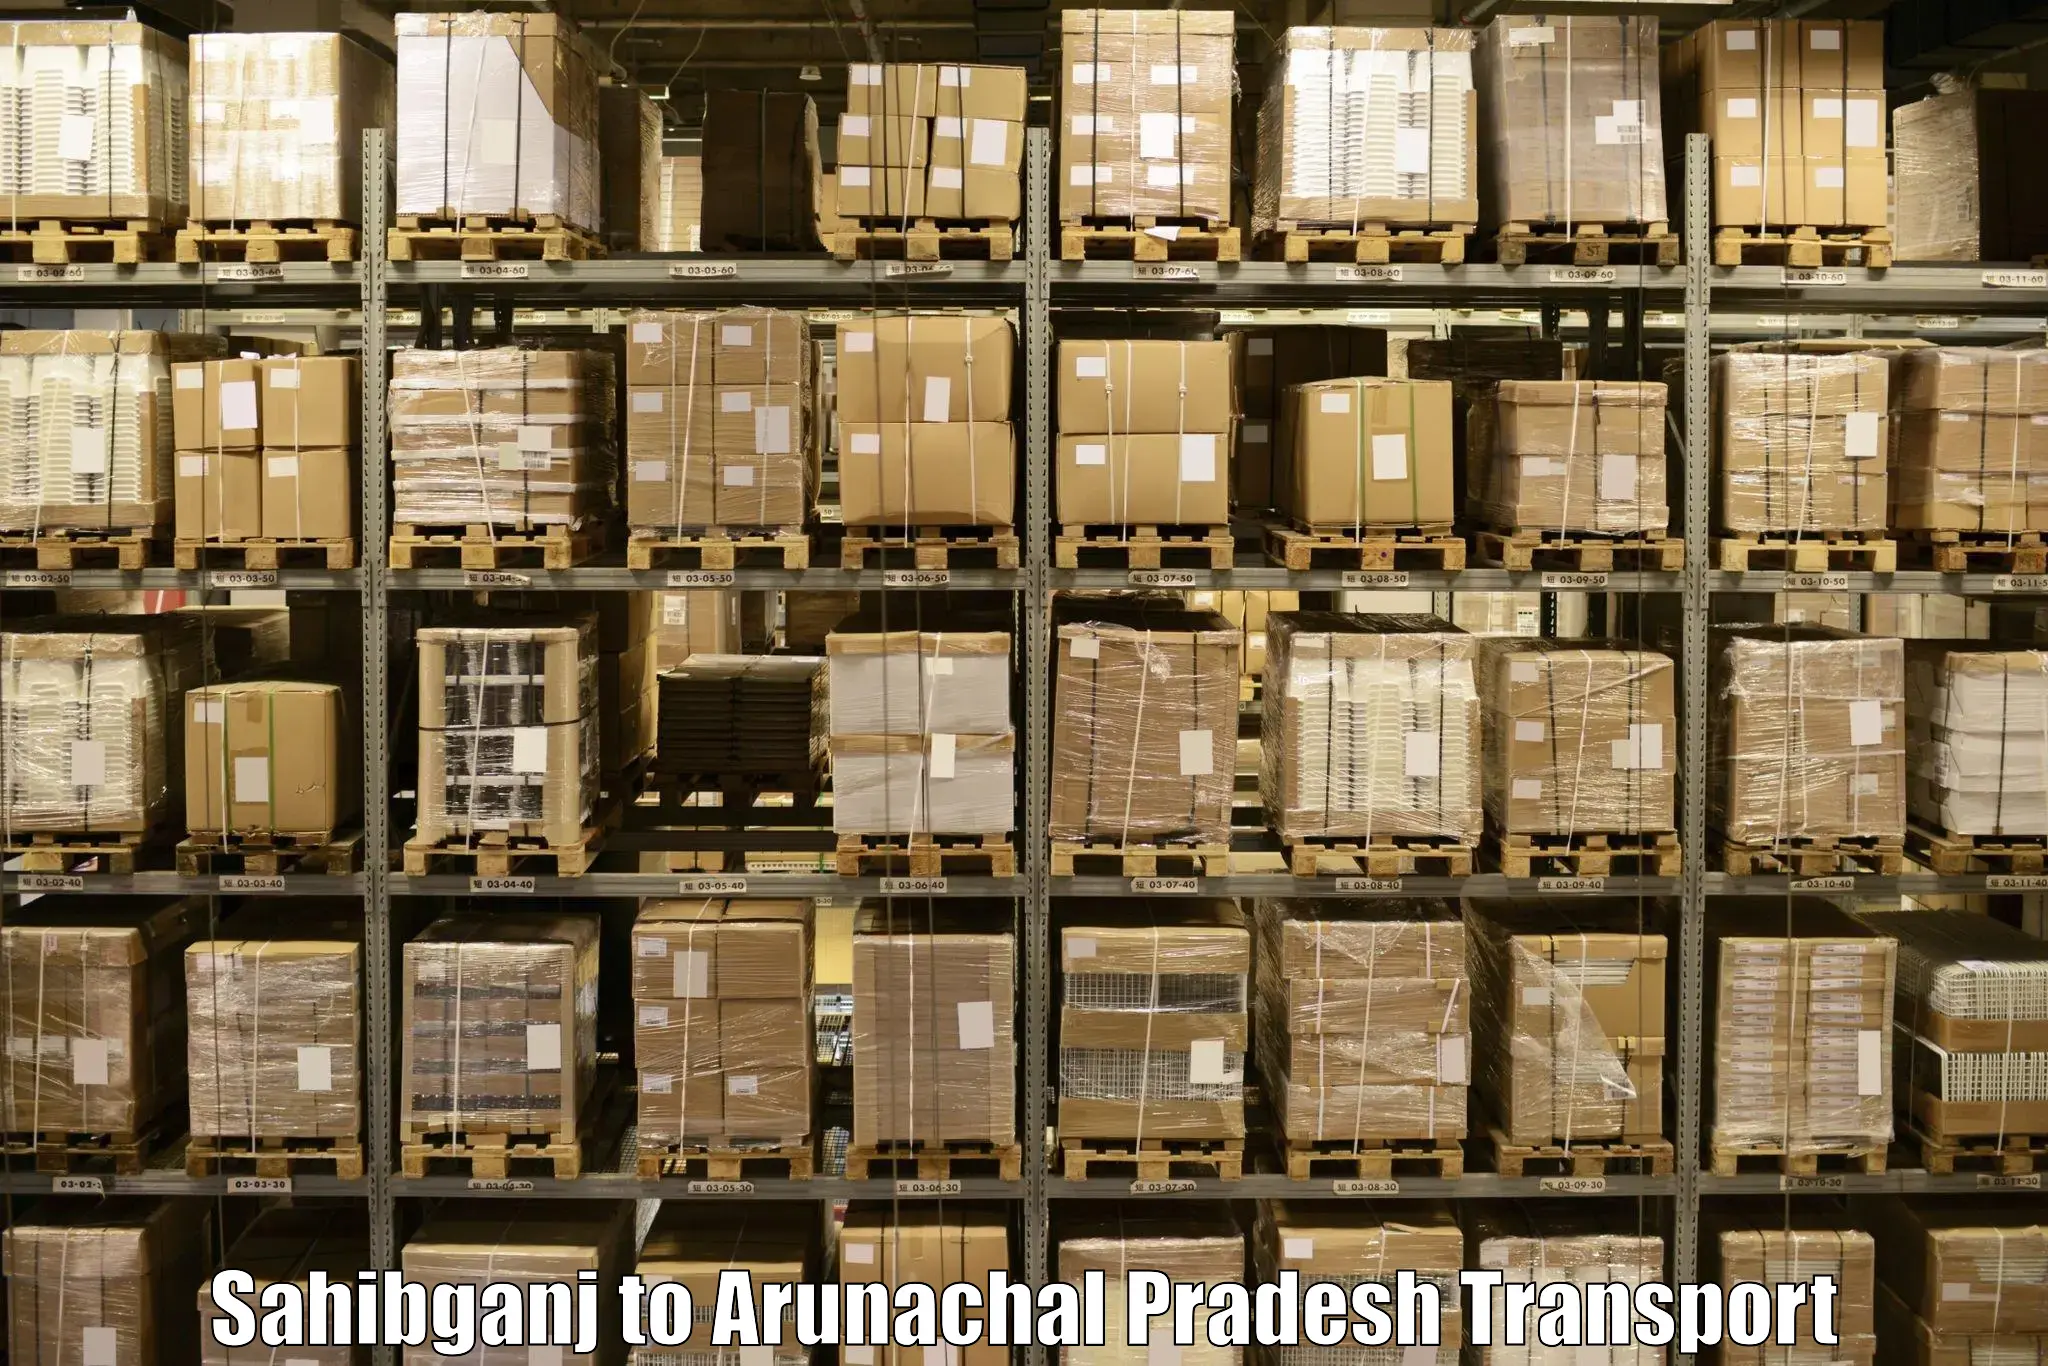 Land transport services in Sahibganj to Arunachal Pradesh